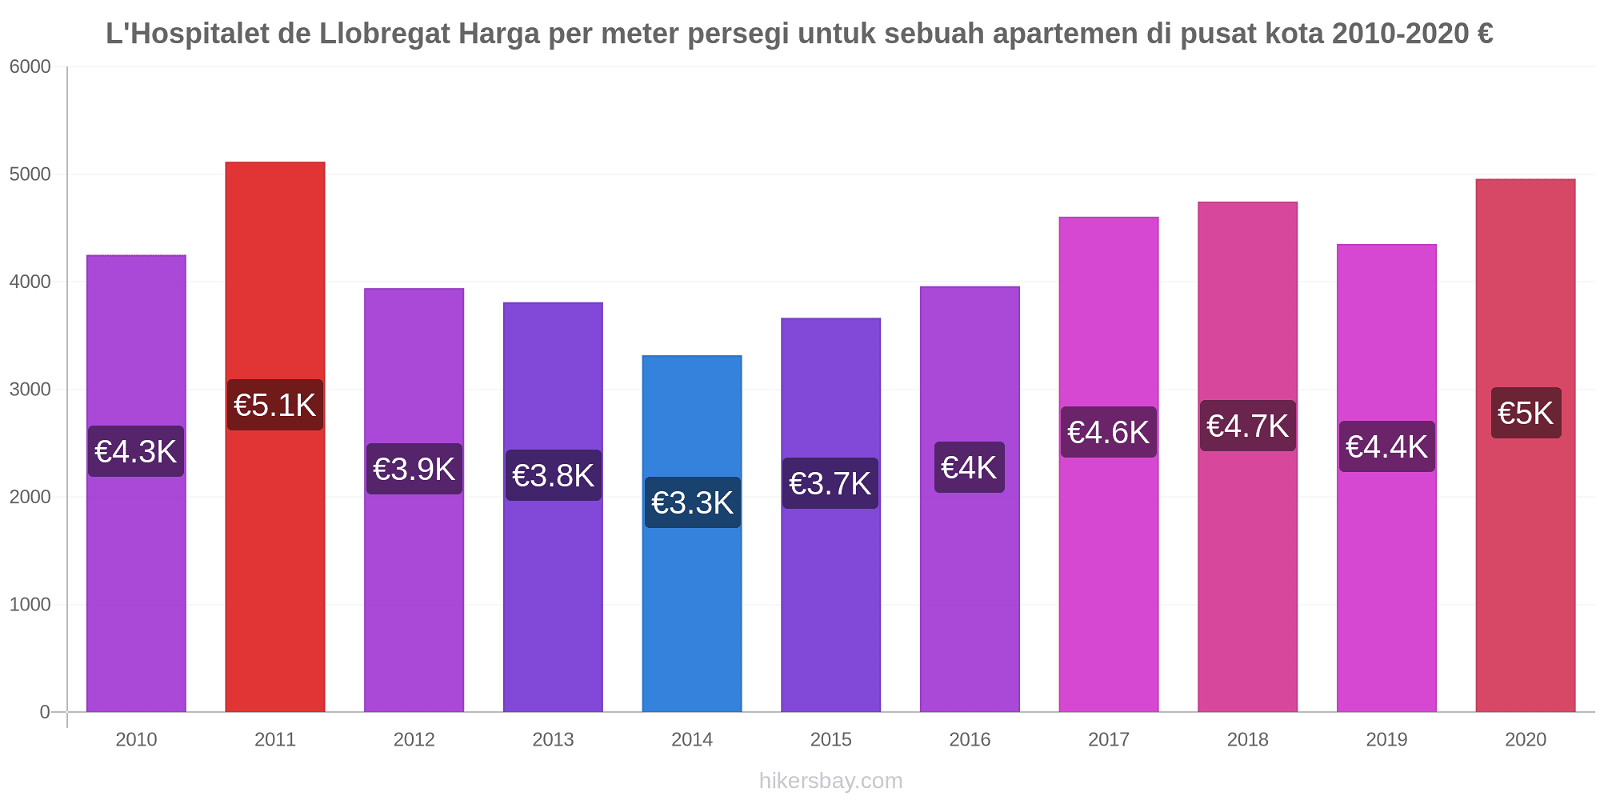 L'Hospitalet de Llobregat perubahan harga Harga per meter persegi untuk sebuah apartemen di pusat kota hikersbay.com